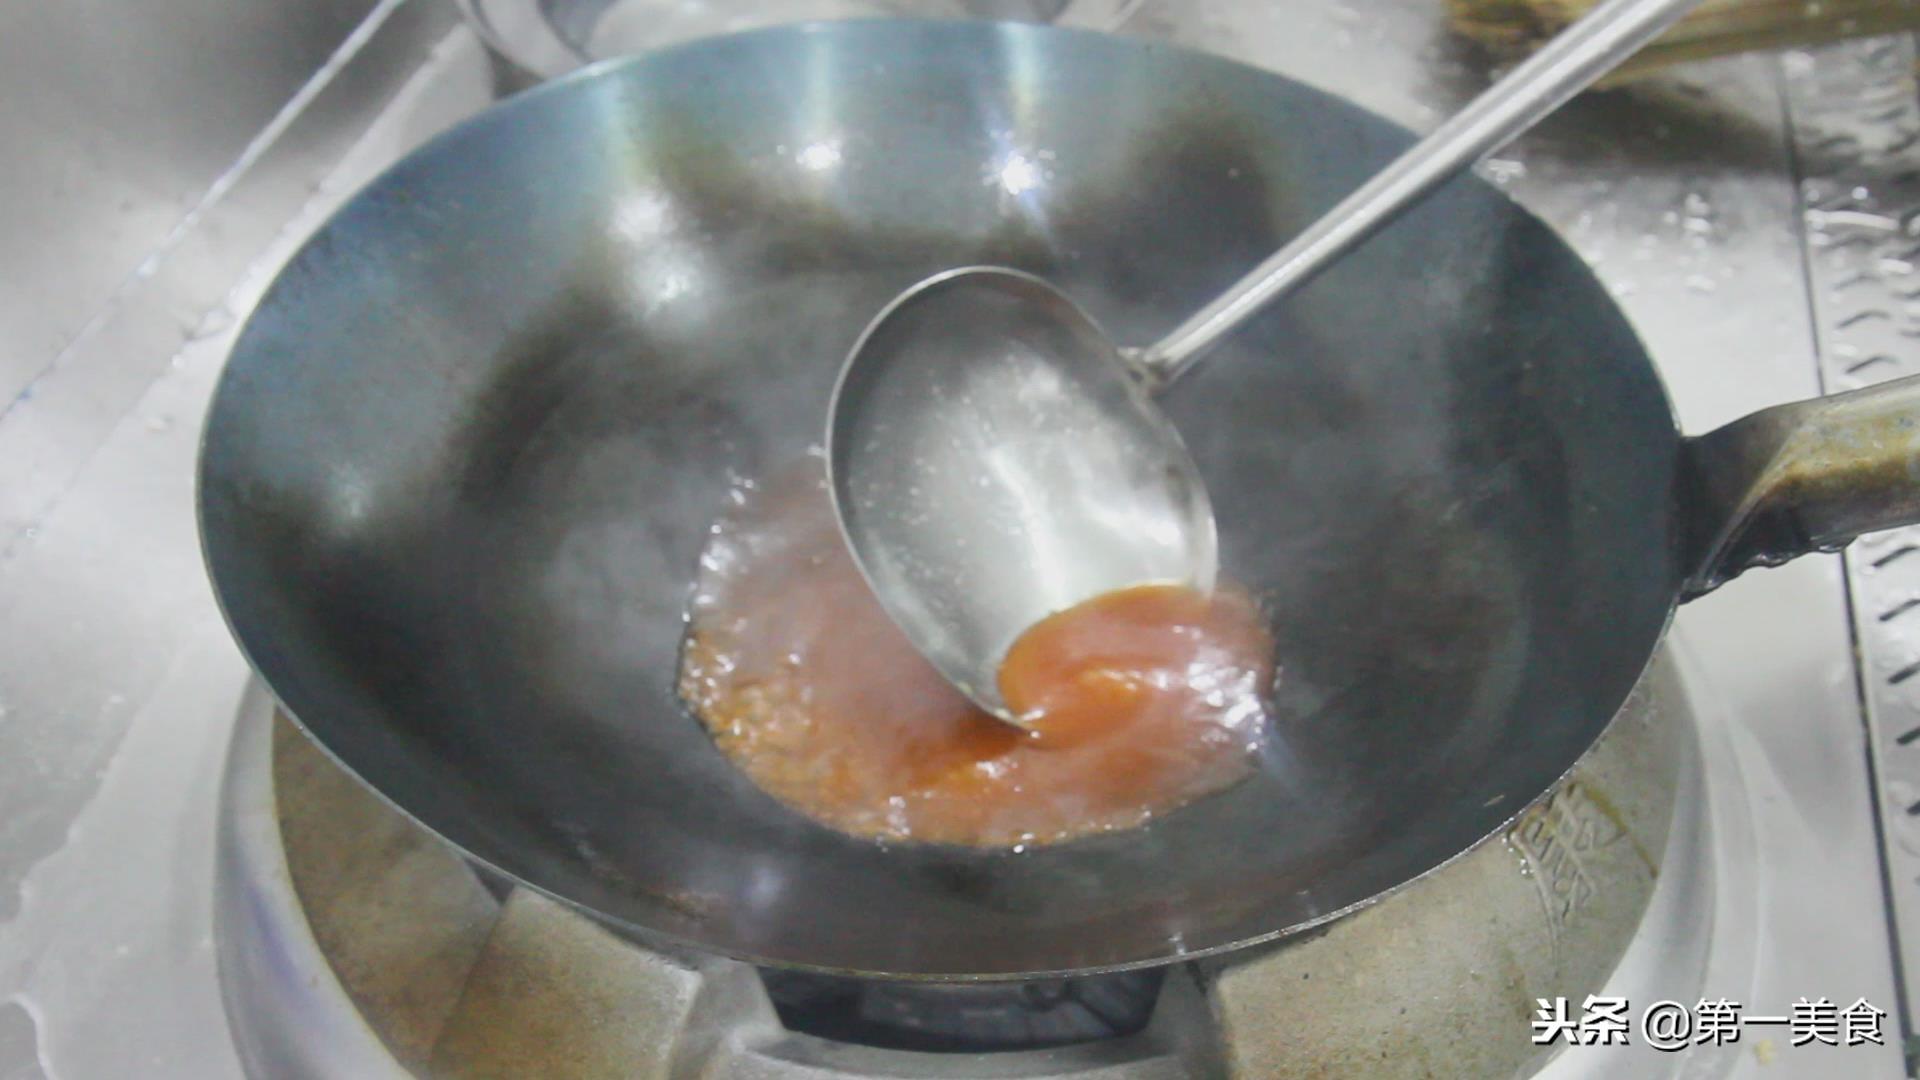 糖醋里脊家常简单做法 ，掌握糖醋汁比例、挂糊技巧，酸甜焦脆不回软